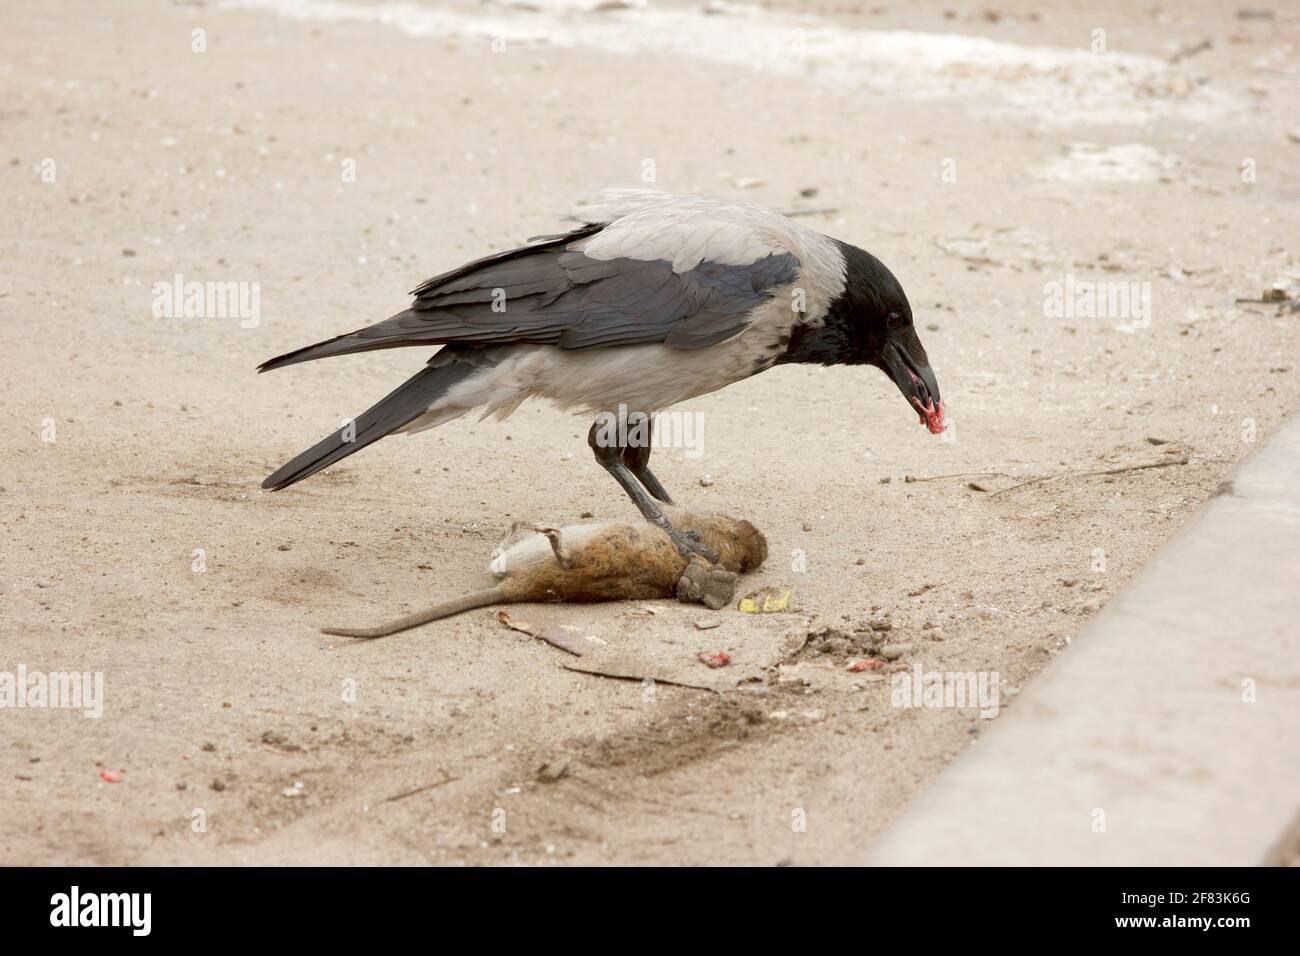 Un corvo grigio mangia un ratto grigio morto. Corvus corone cornix e Rattus norvegicus. Scena urbana sul parcheggio. Catena alimentare Foto Stock